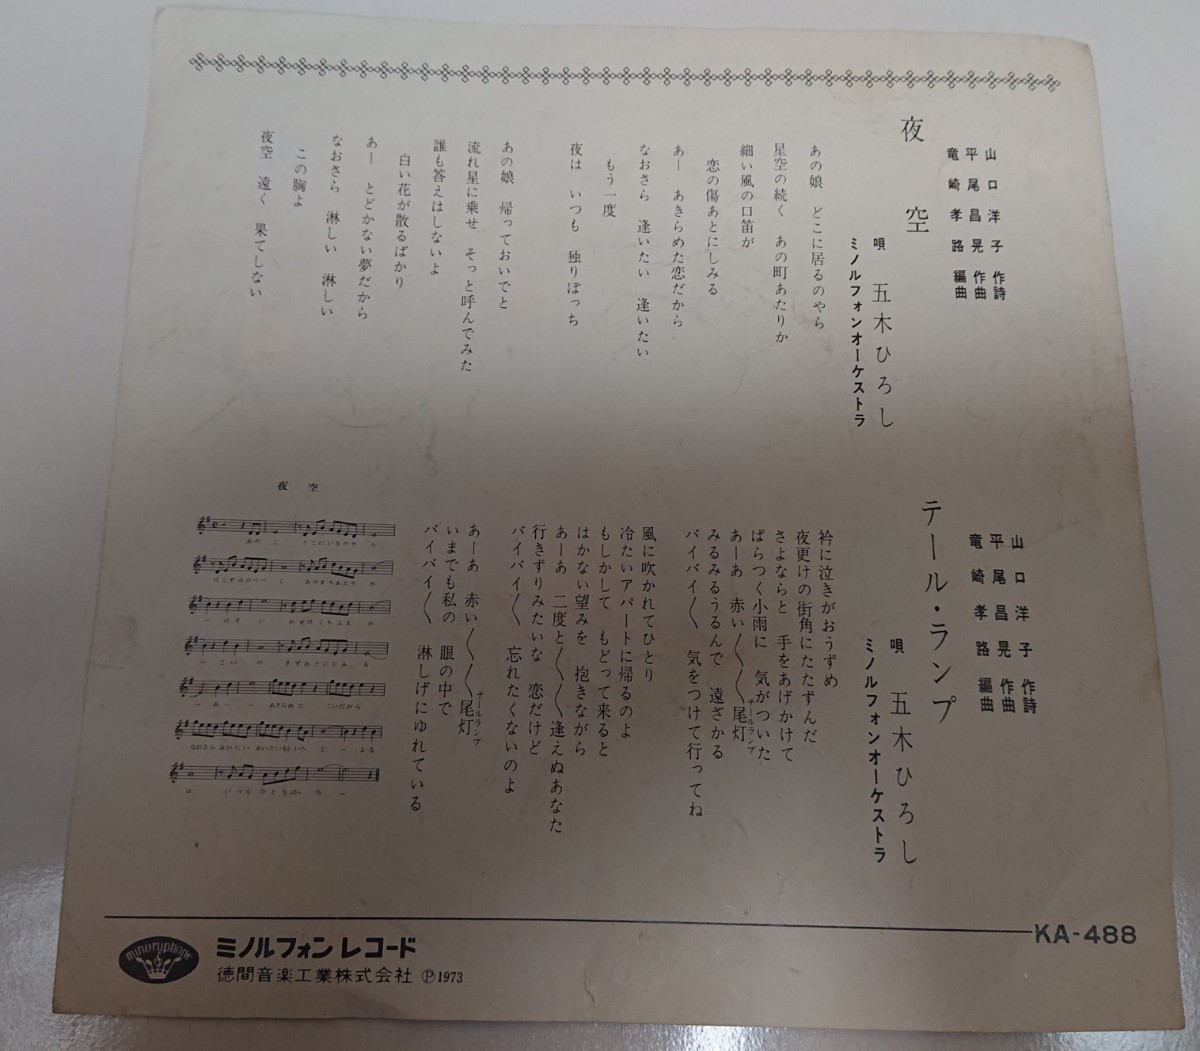 五木ひろし 「夜空」レコード1973年12月日本レコード大賞受賞曲